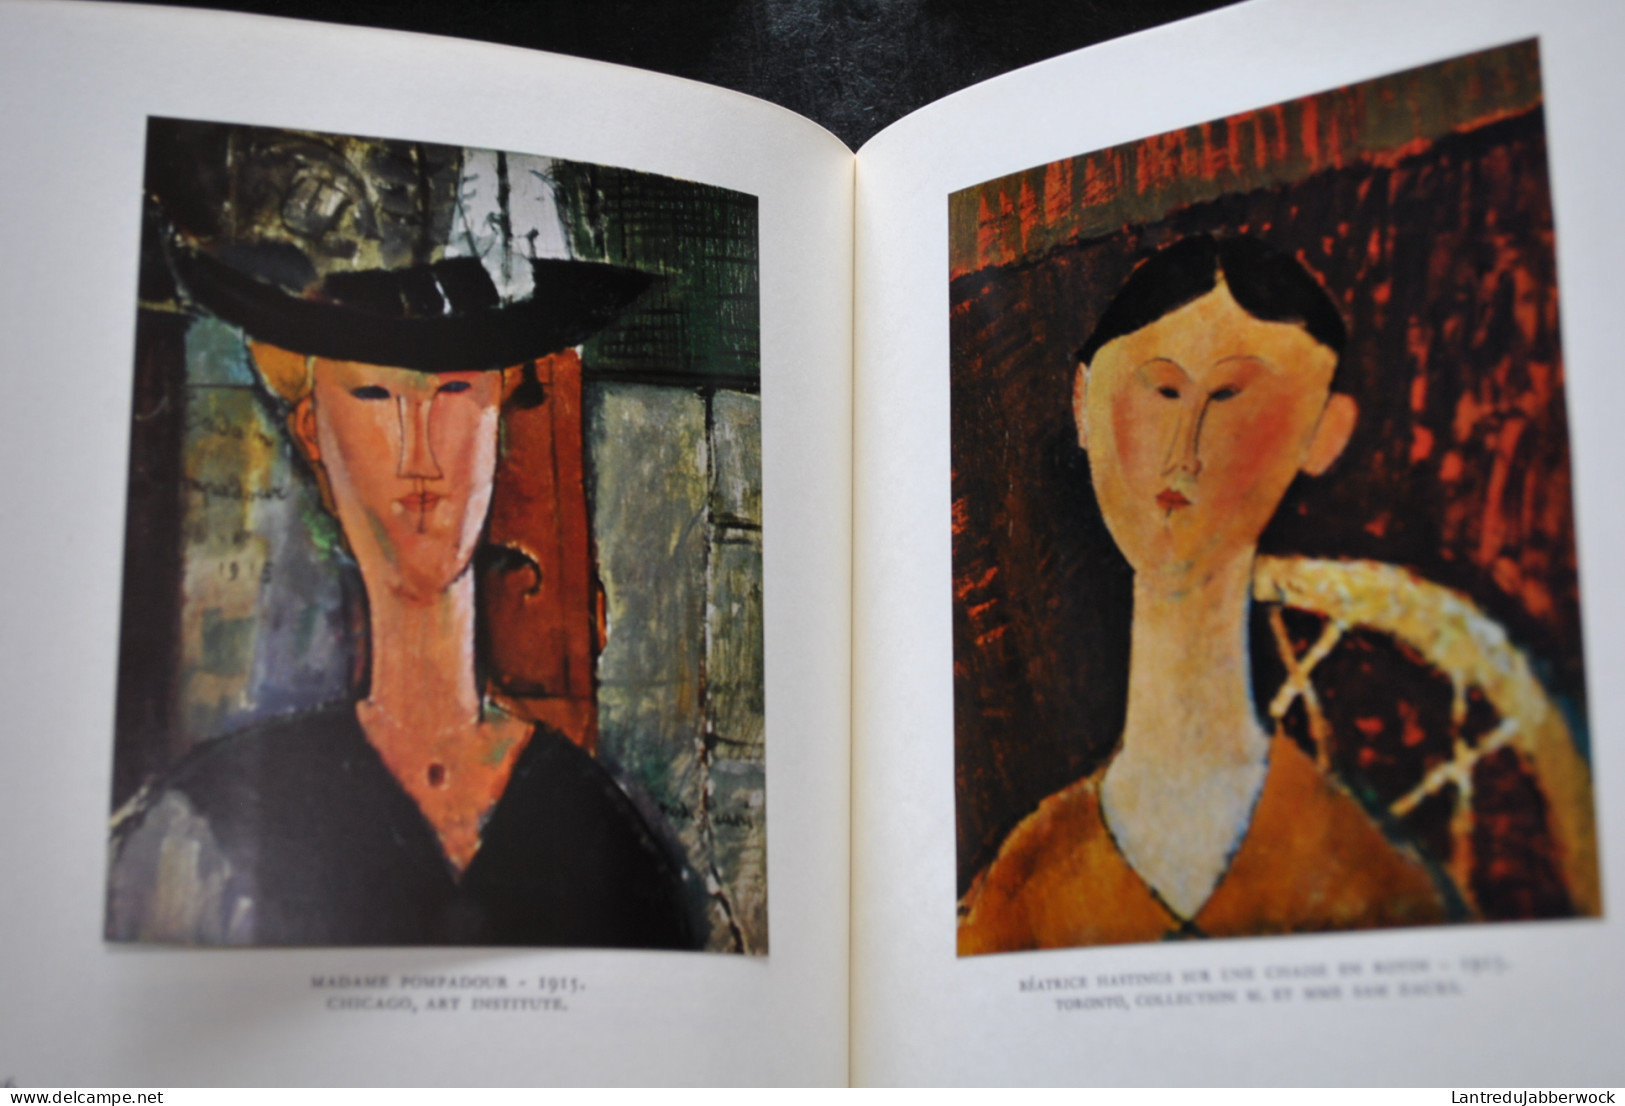 Claude ROY Modigliani Skira 1958 Collection Le Goût De Notre Temps Peintre Peinture Art Artiste Images Contrecollées - Kunst